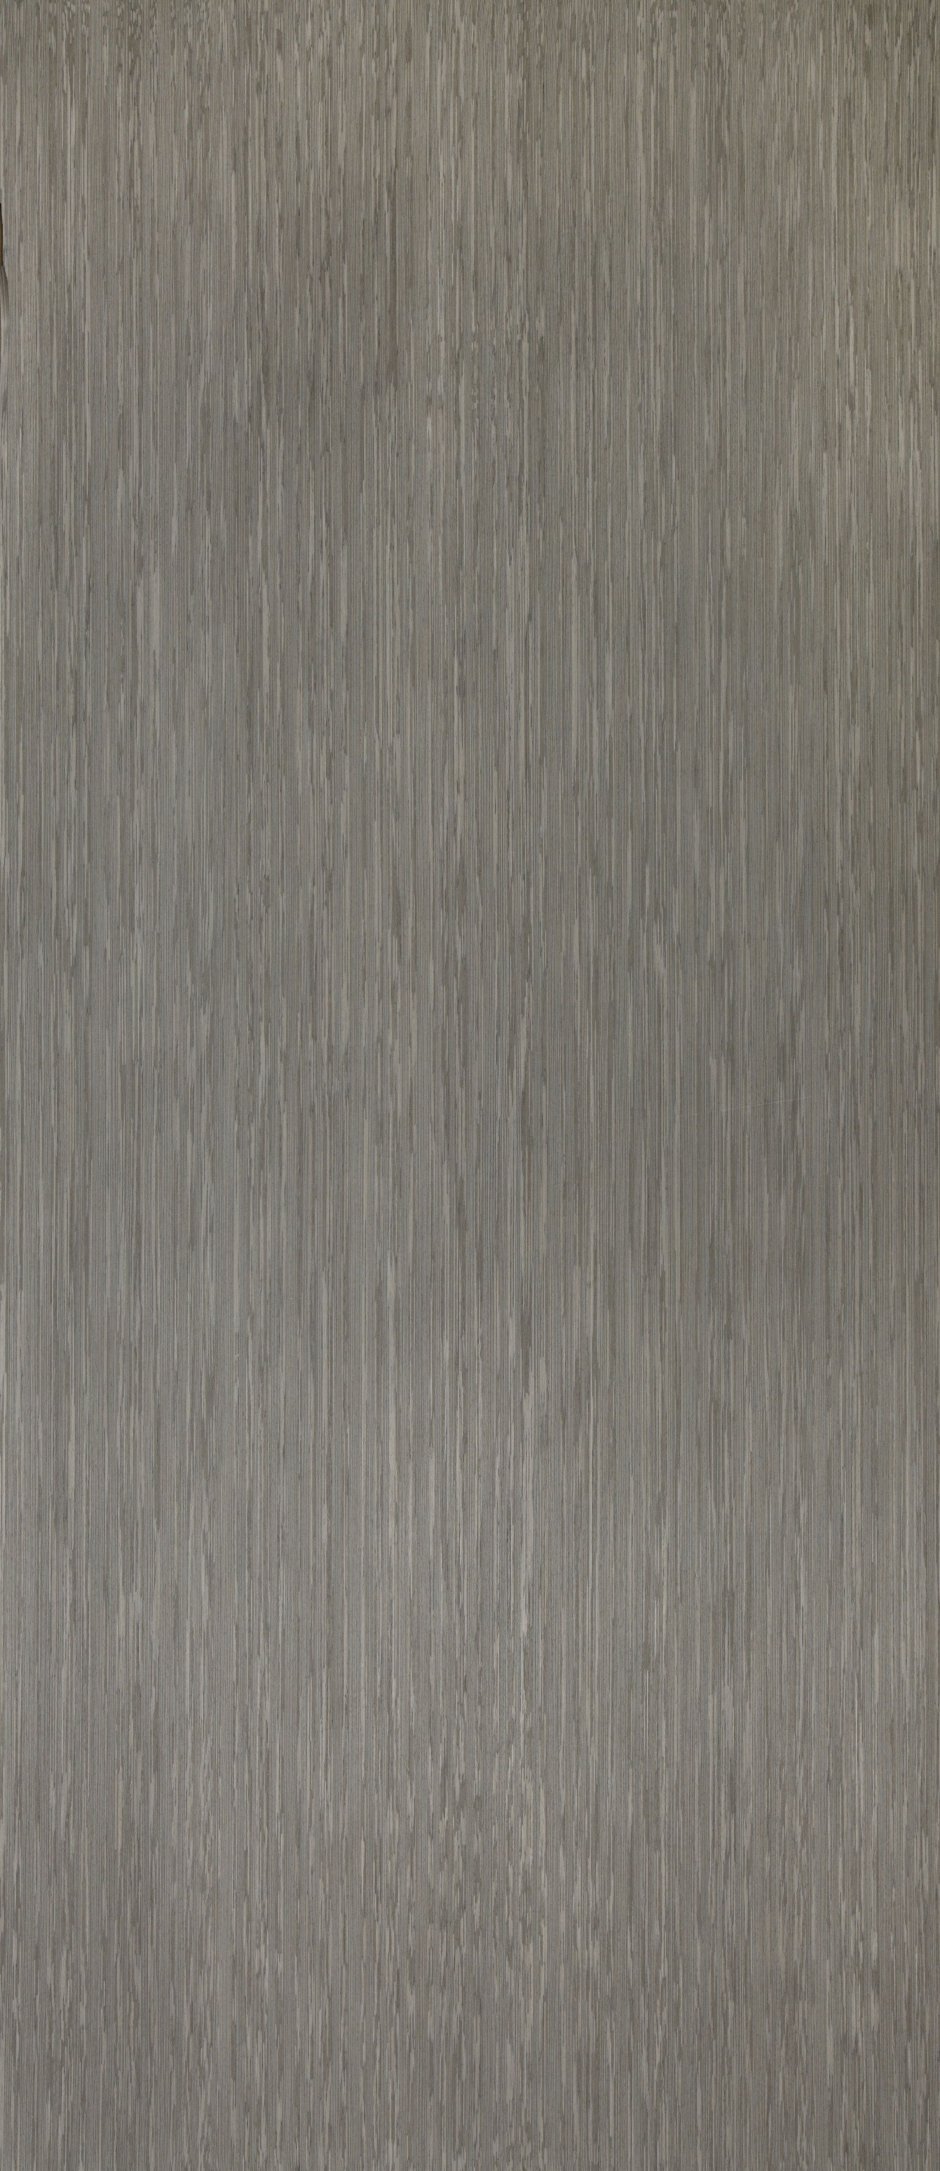 Керамический гранит Боско серый sg410520n